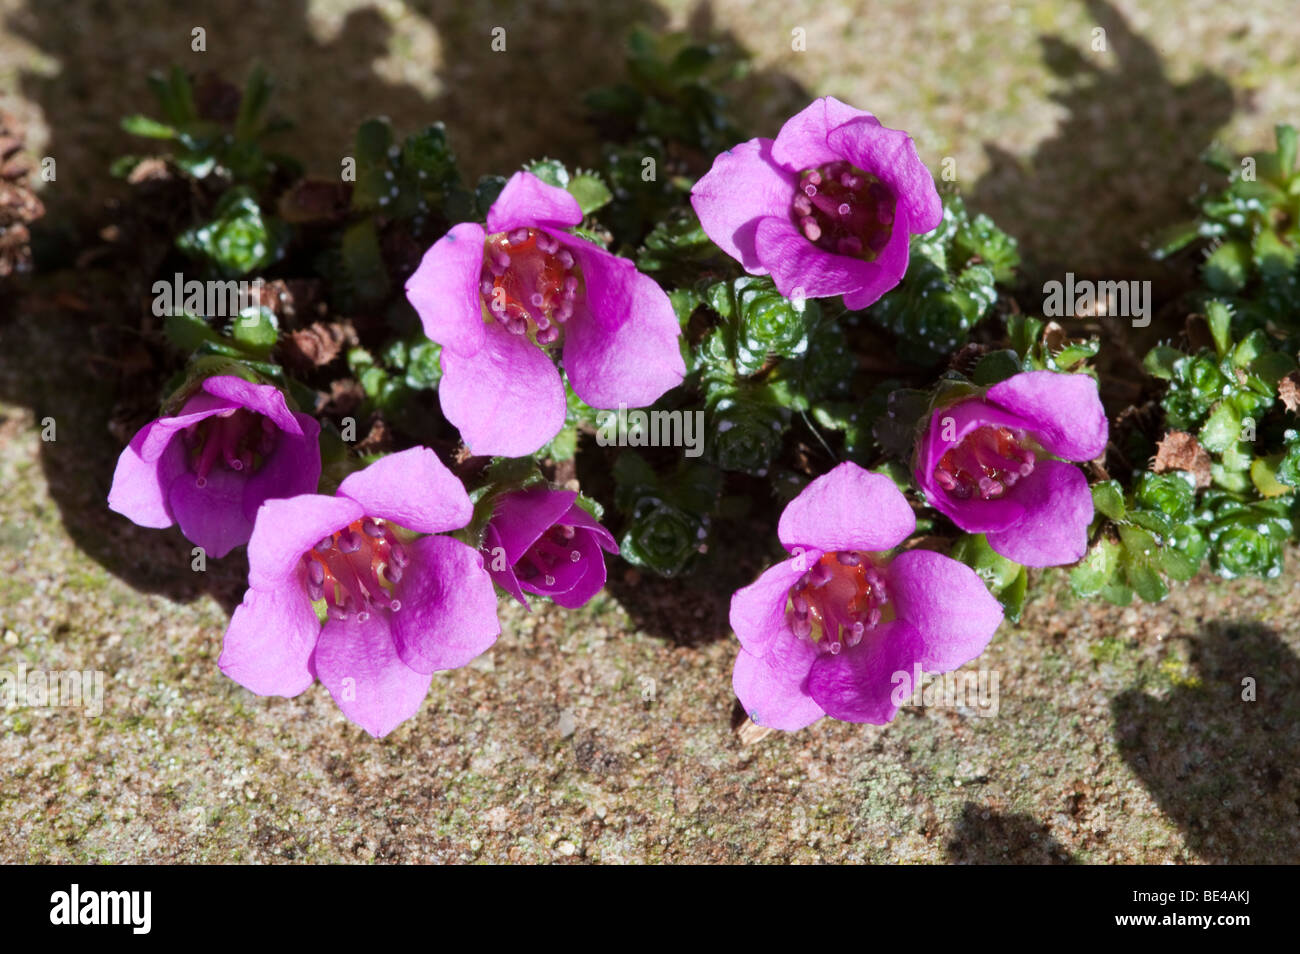 Purple Saxifrage (Saxifraga oppositifolia) Stock Photo